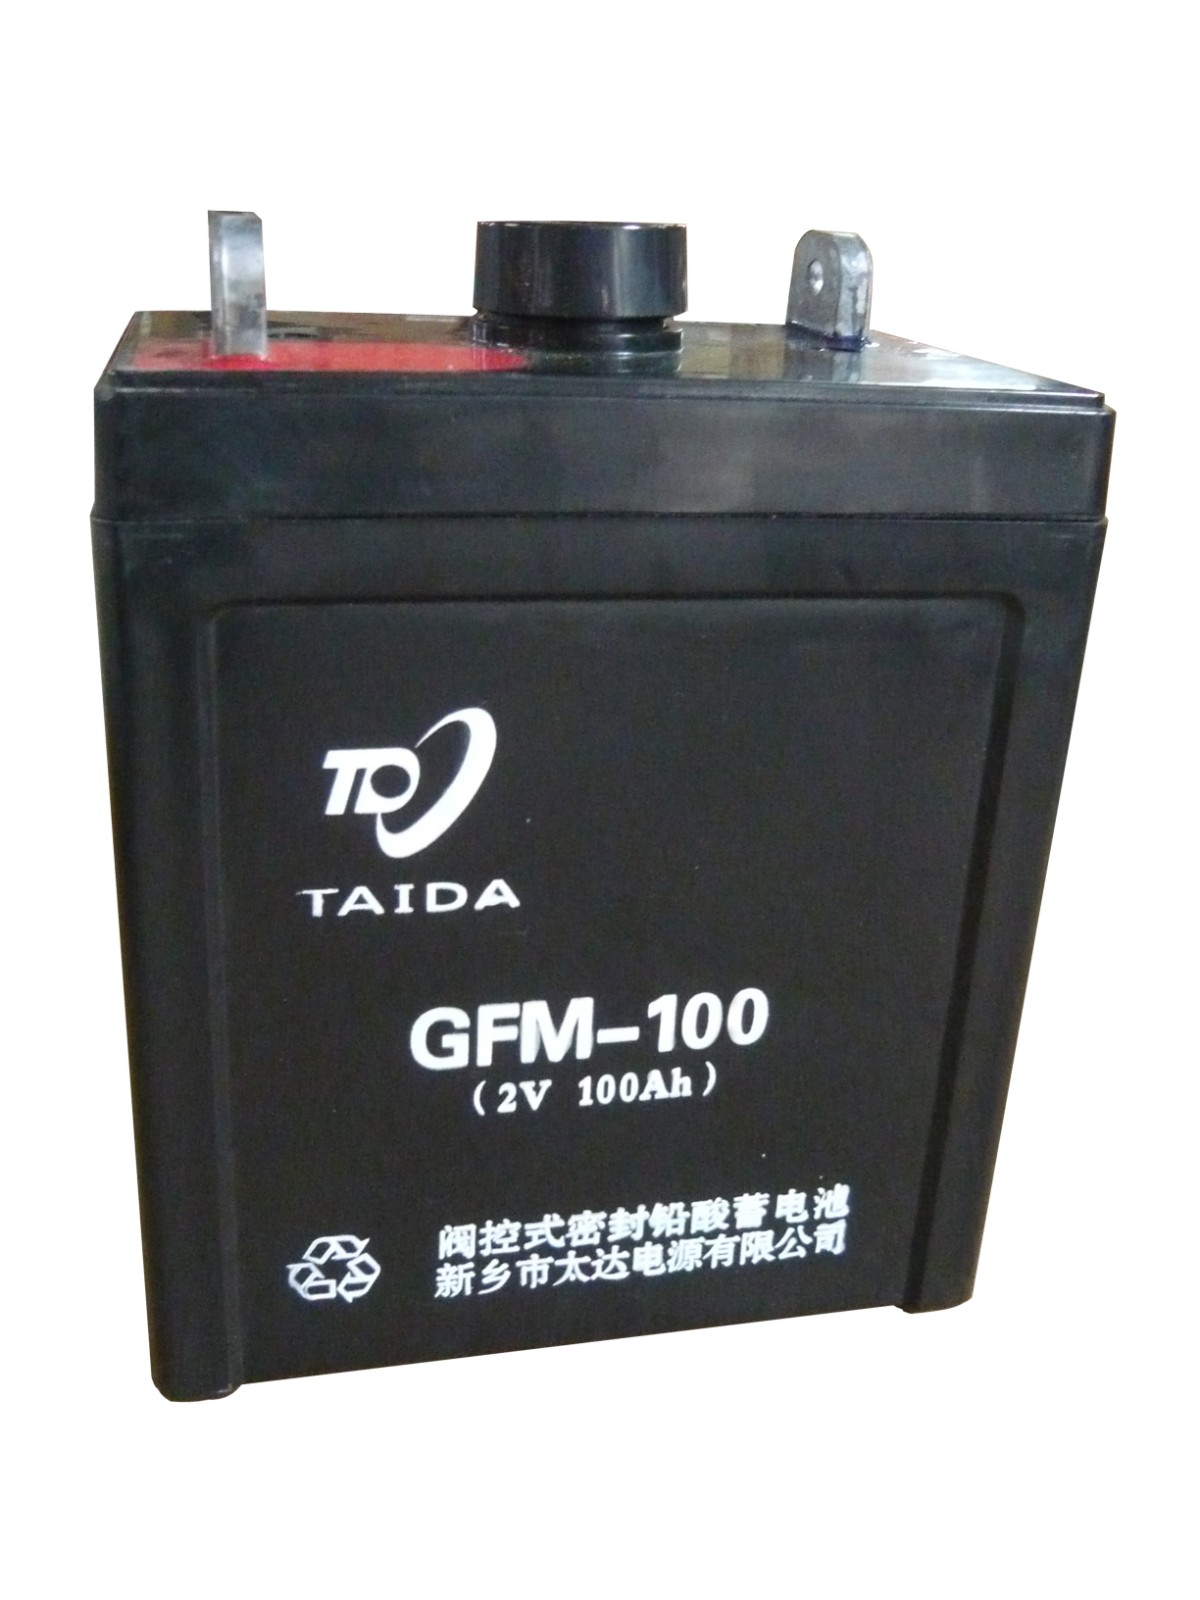 閥控式密封鉛酸蓄電池 型號GFM-100 2V100Ah(10HR)